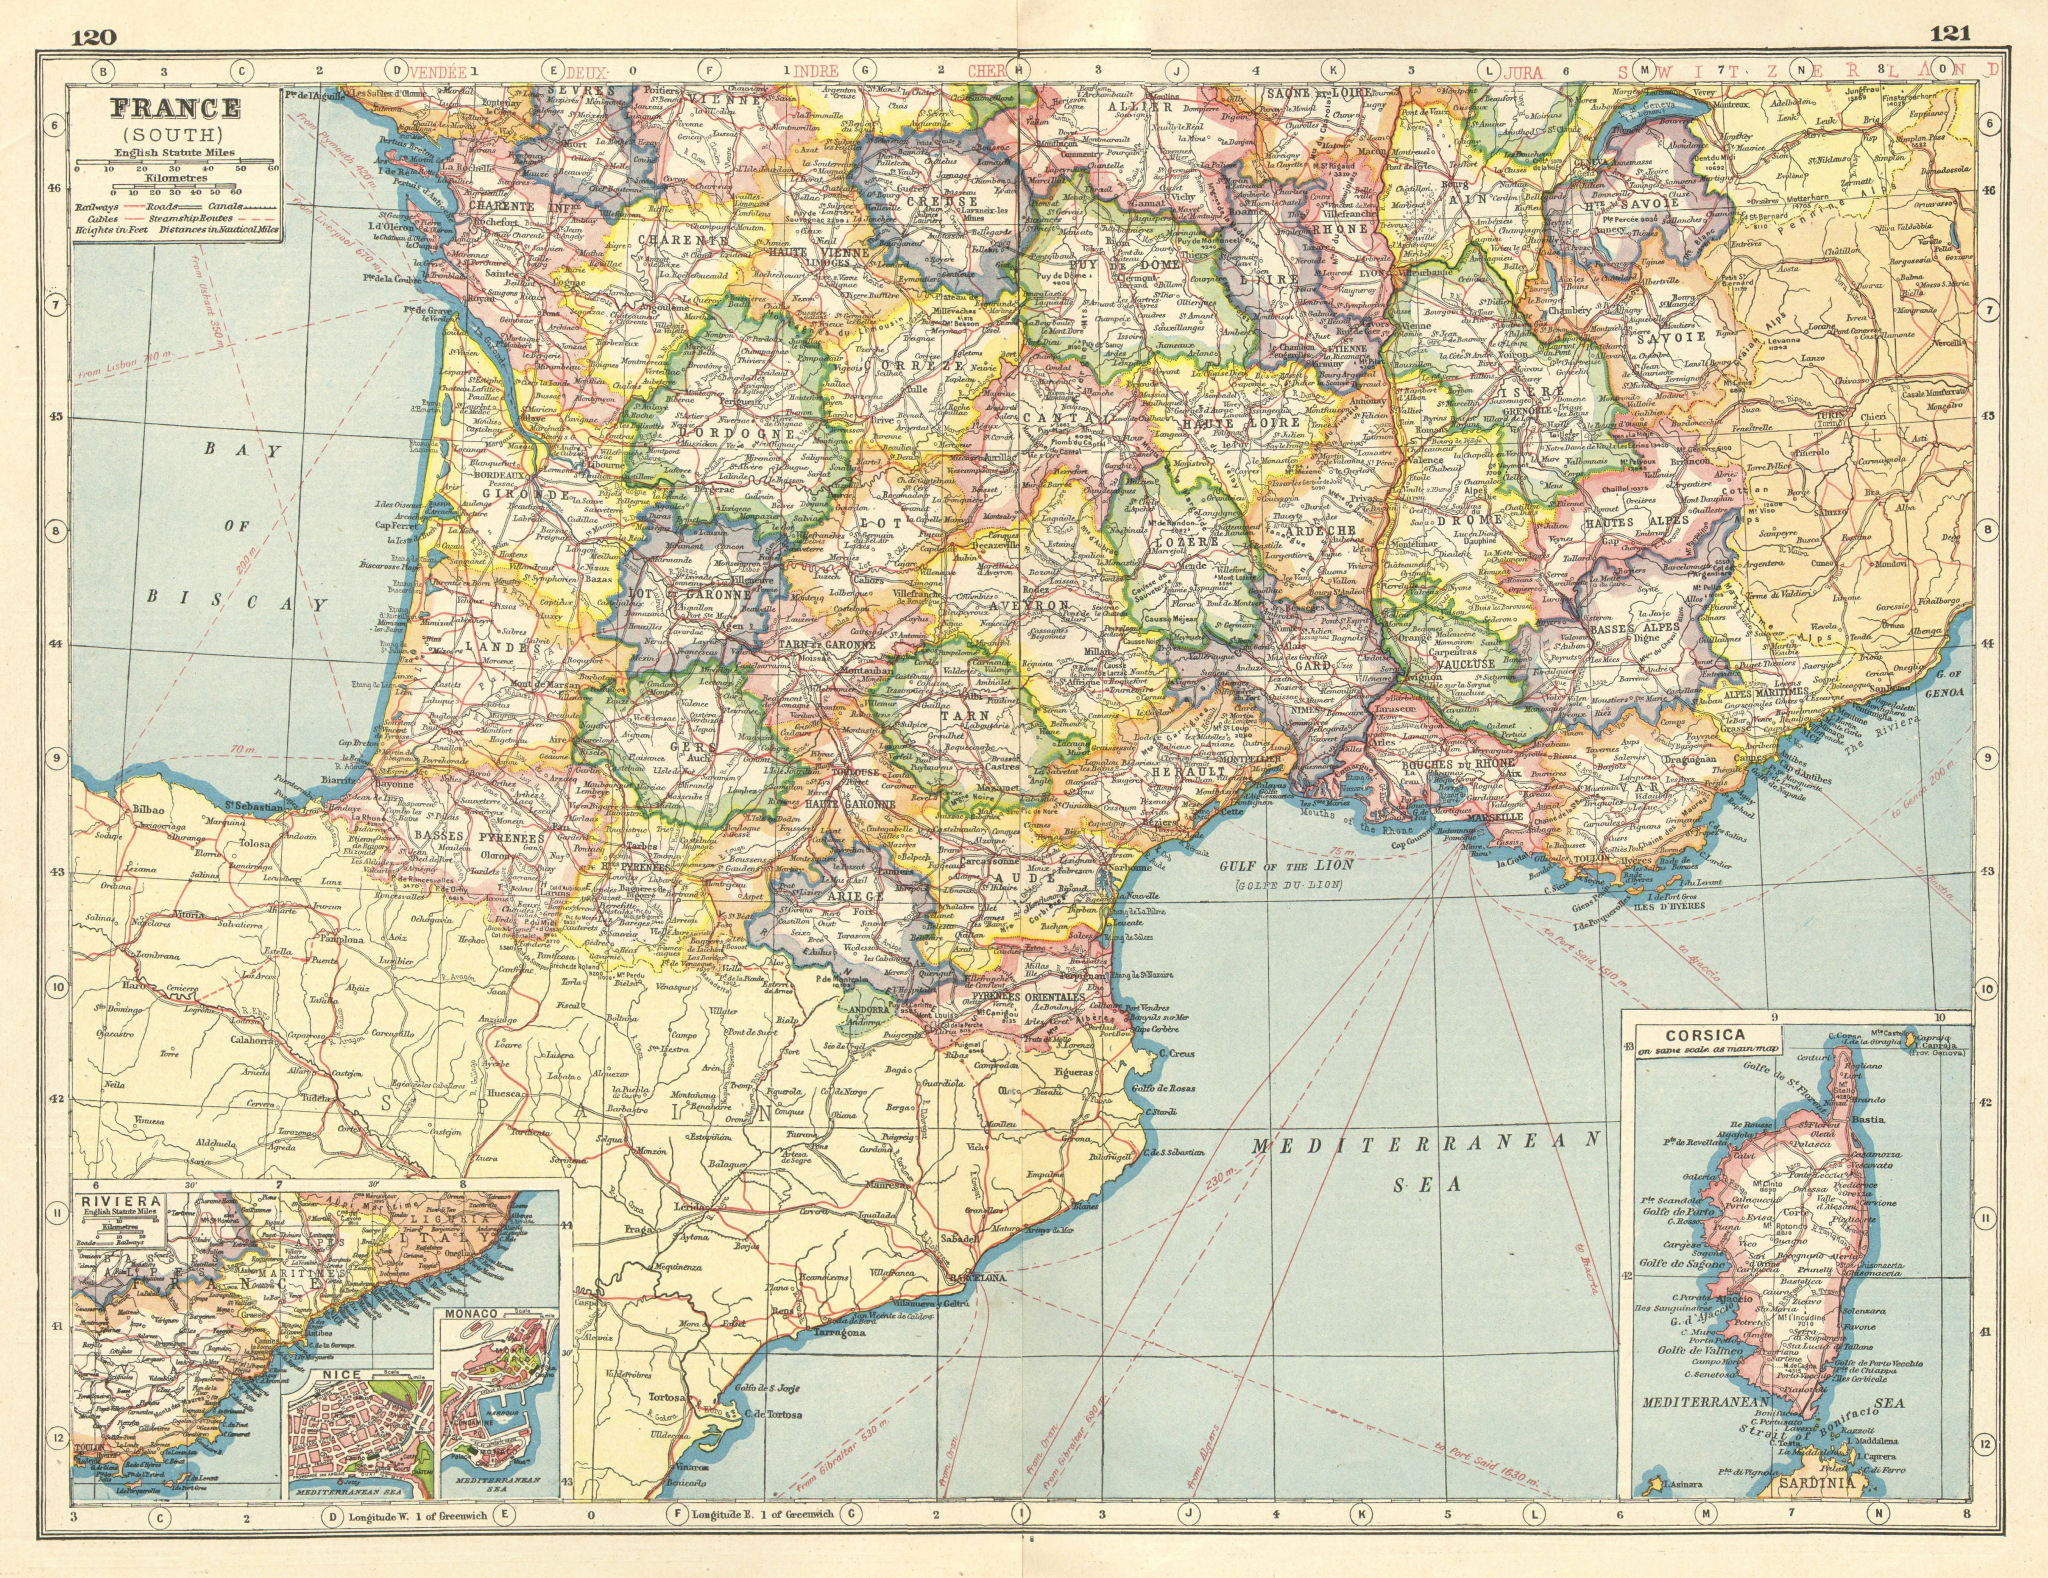 FRANCE SOUTH.Departments.Inset Riviera Cote D'Azur.Nice & Monaco plans 1920 map